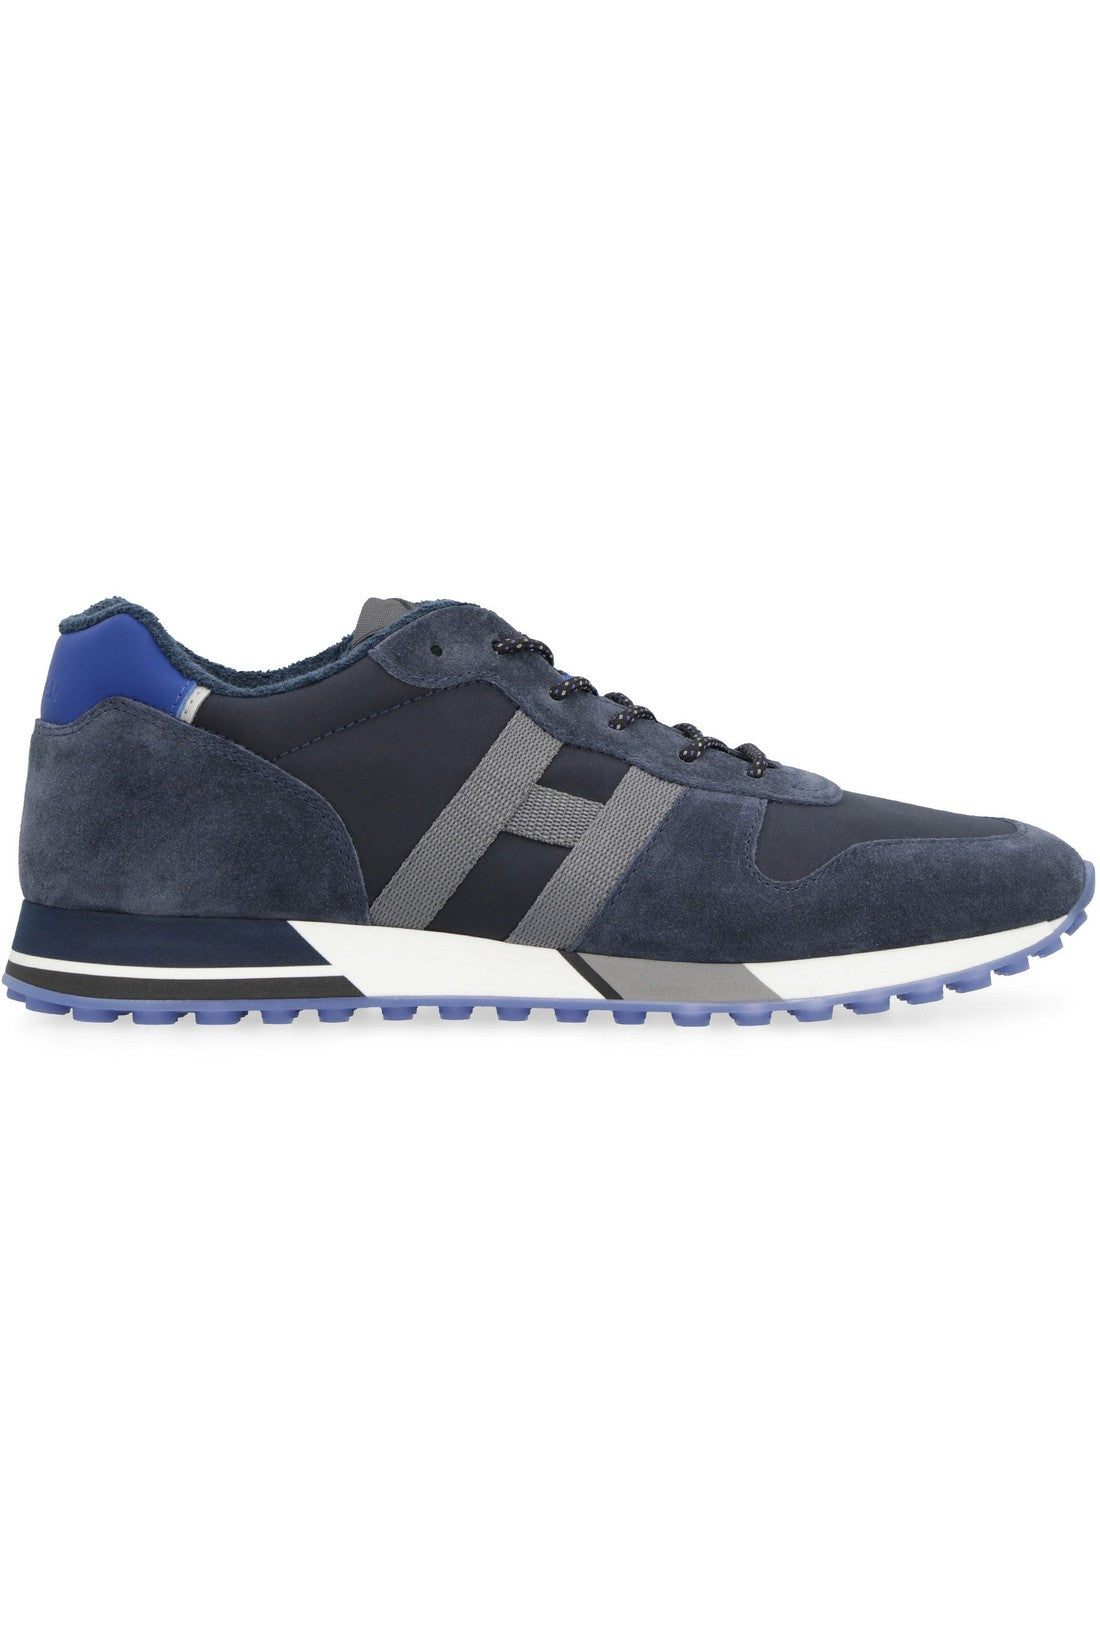 Hogan-OUTLET-SALE-H383 low-top sneakers-ARCHIVIST